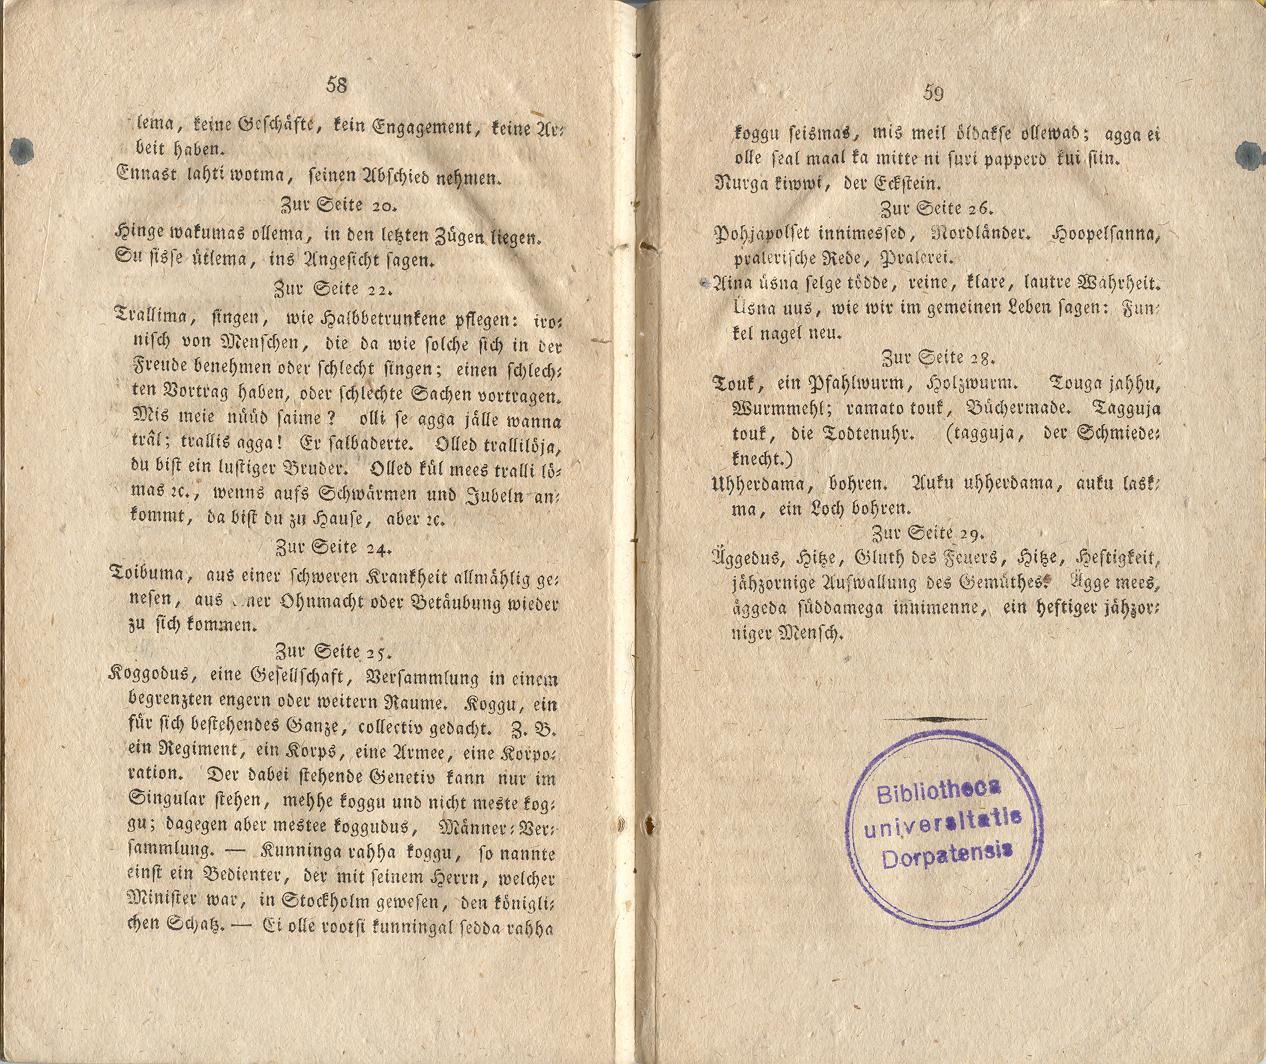 Ehstnische Originalblätter für Deutsche (1816) | 35. (58-59) Main body of text